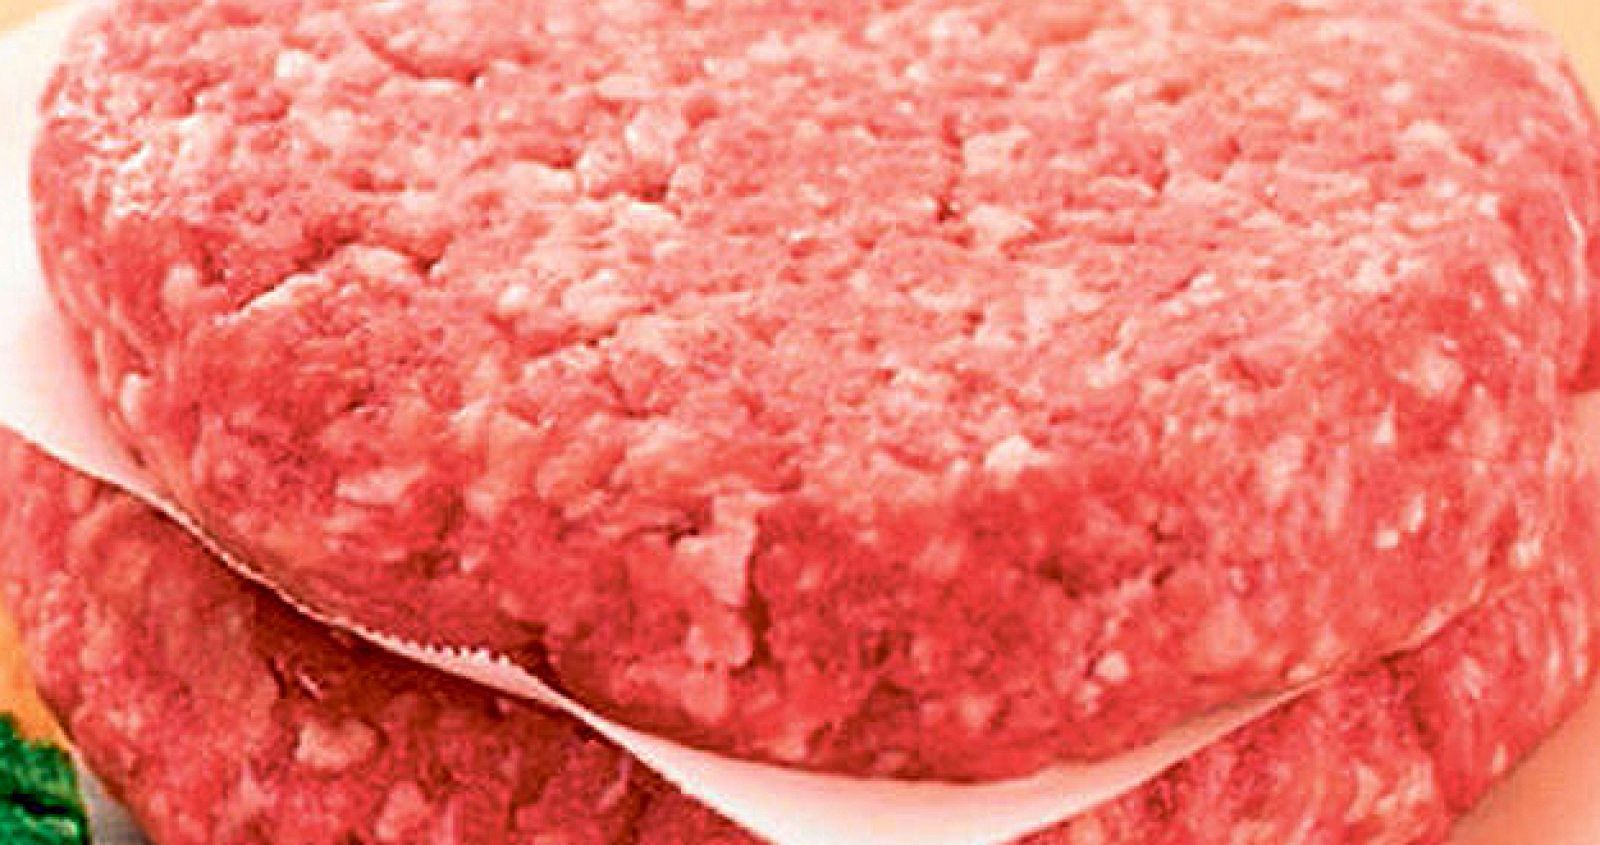 La OCU ha analizado 20 tipos de hamburguesas frescas envasadas de supermercados